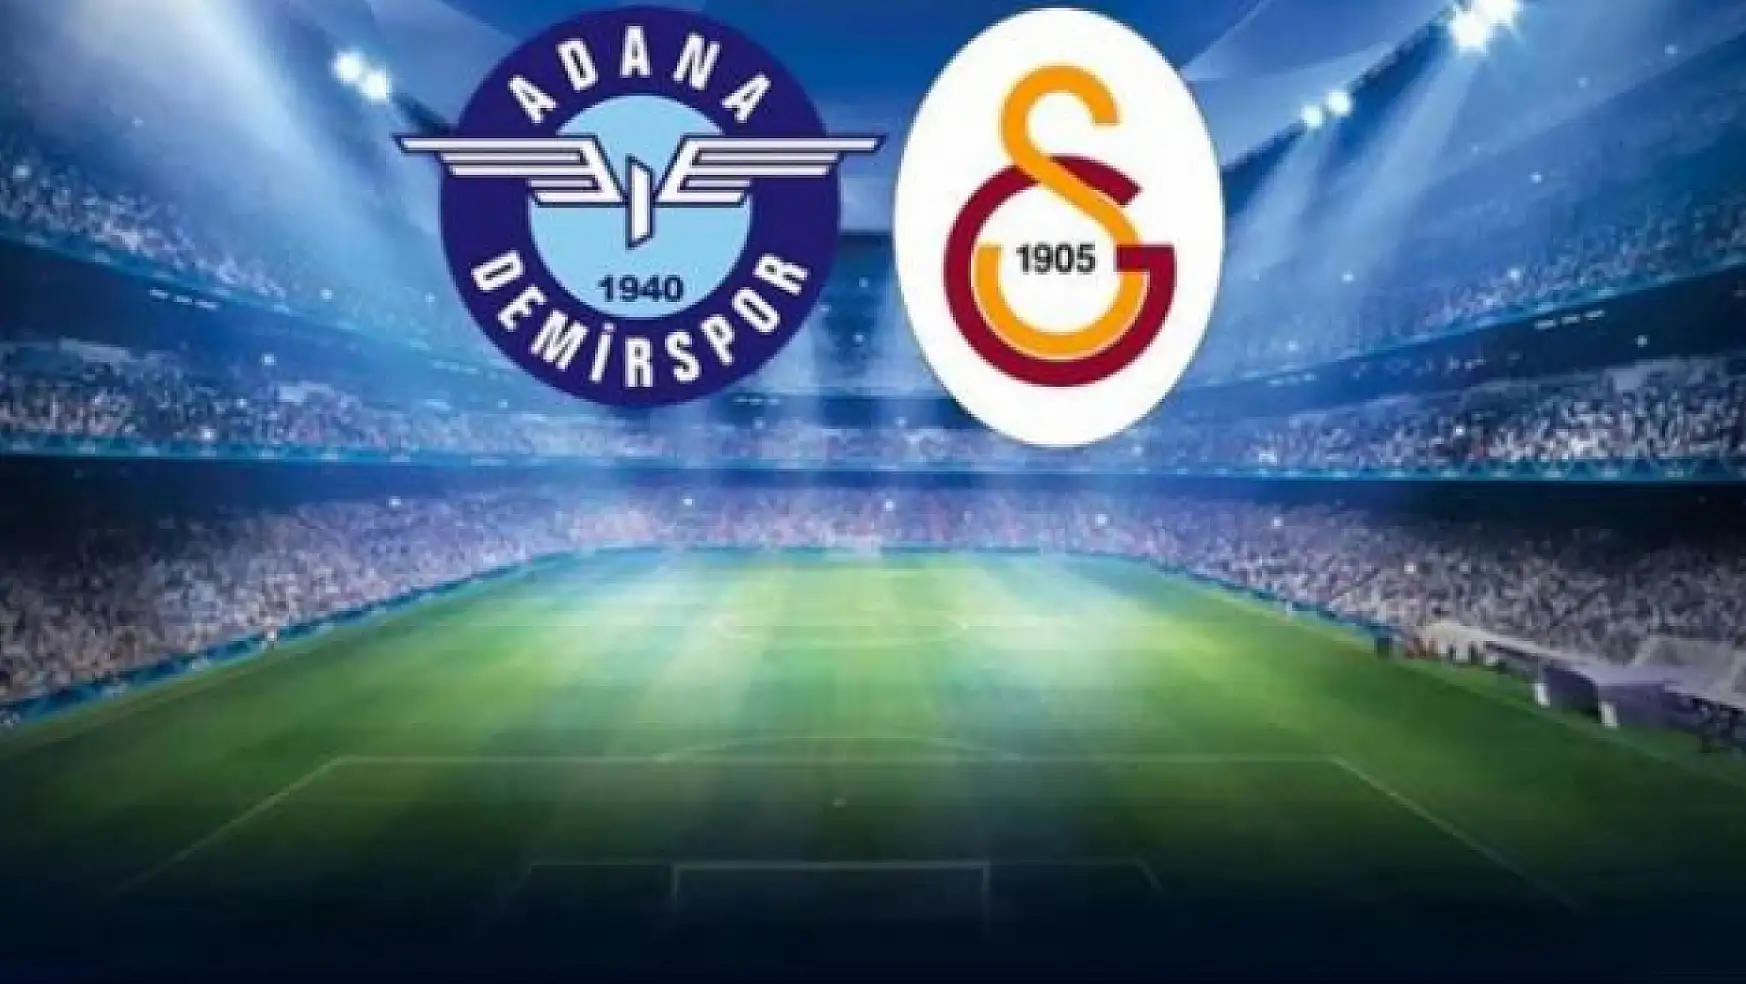 Adana Demirspor - Galatasaray Maçı Nefes Kesiyor! Top Bir O Kalede Bir Bu Kalede